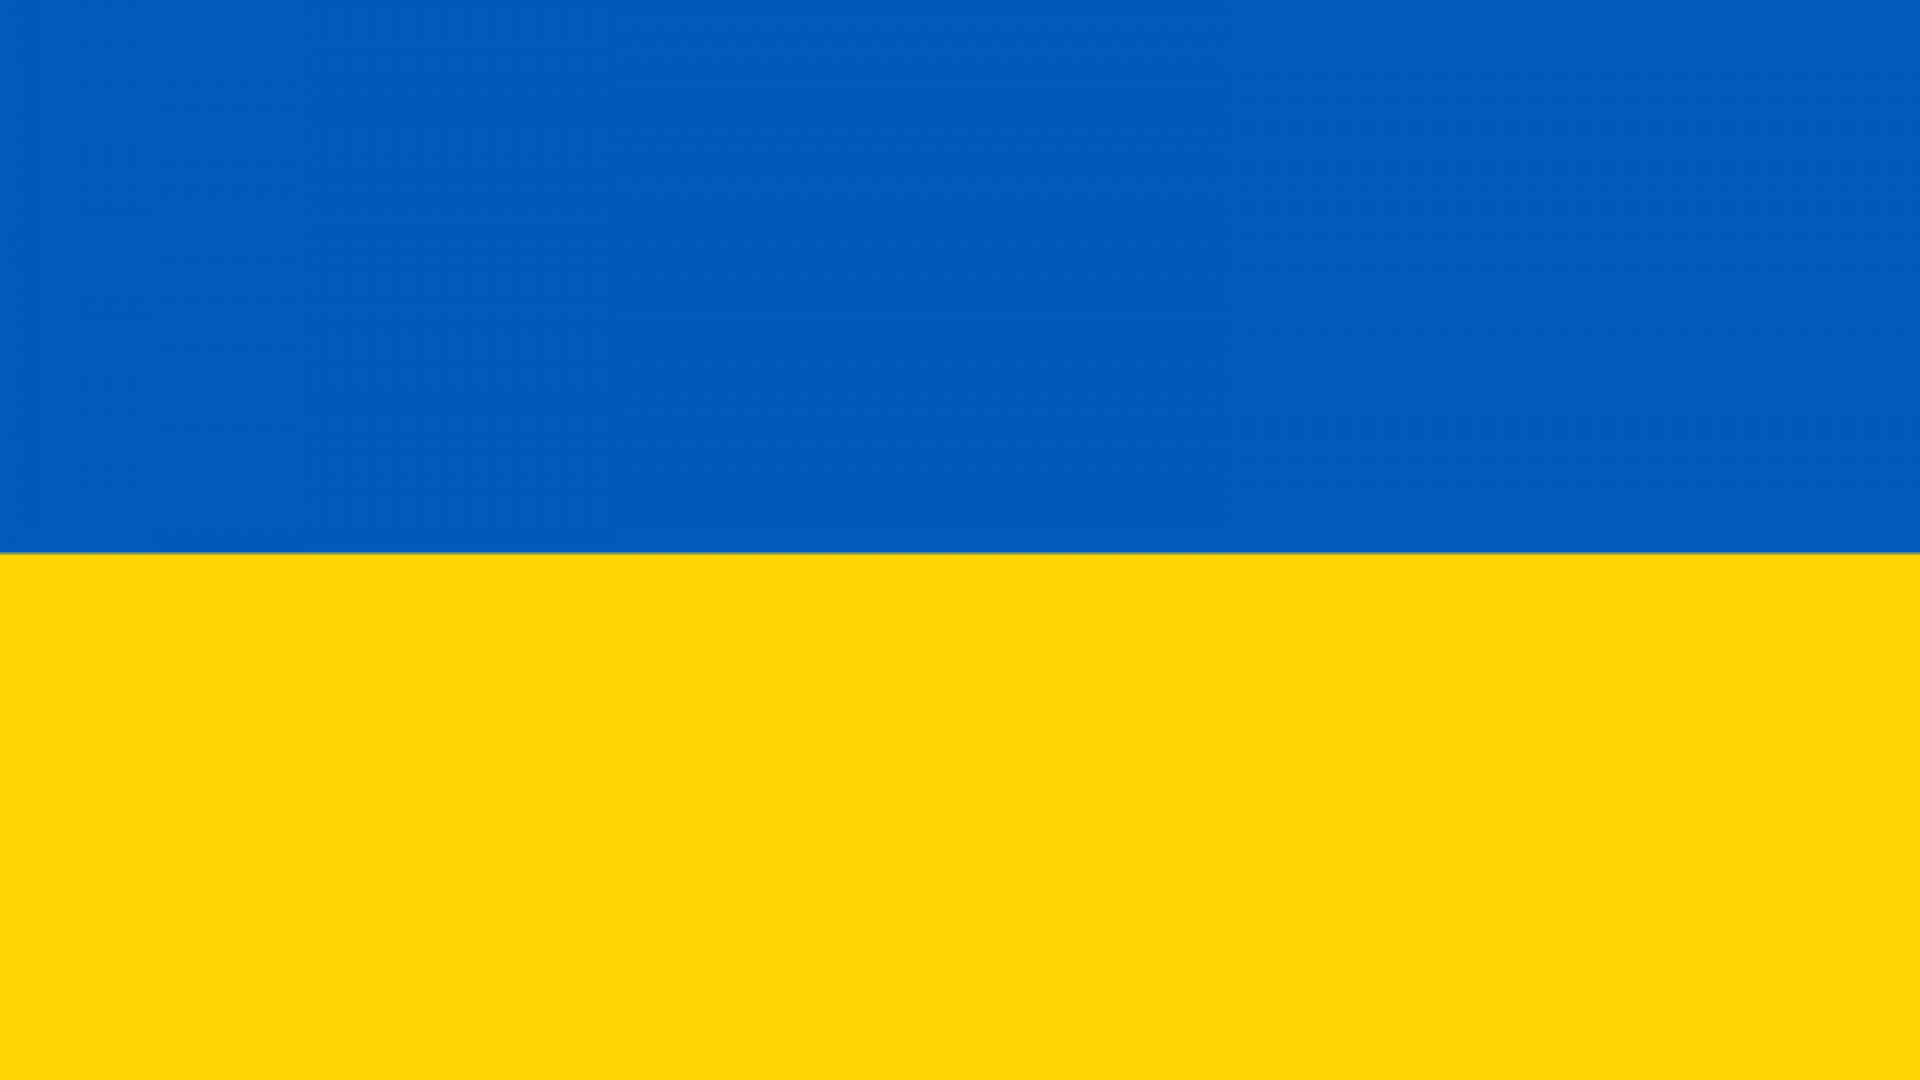 Stanovisko ÚDU k situaci na Ukrajině a aktuální formy podpory ve vědeckém prostředí